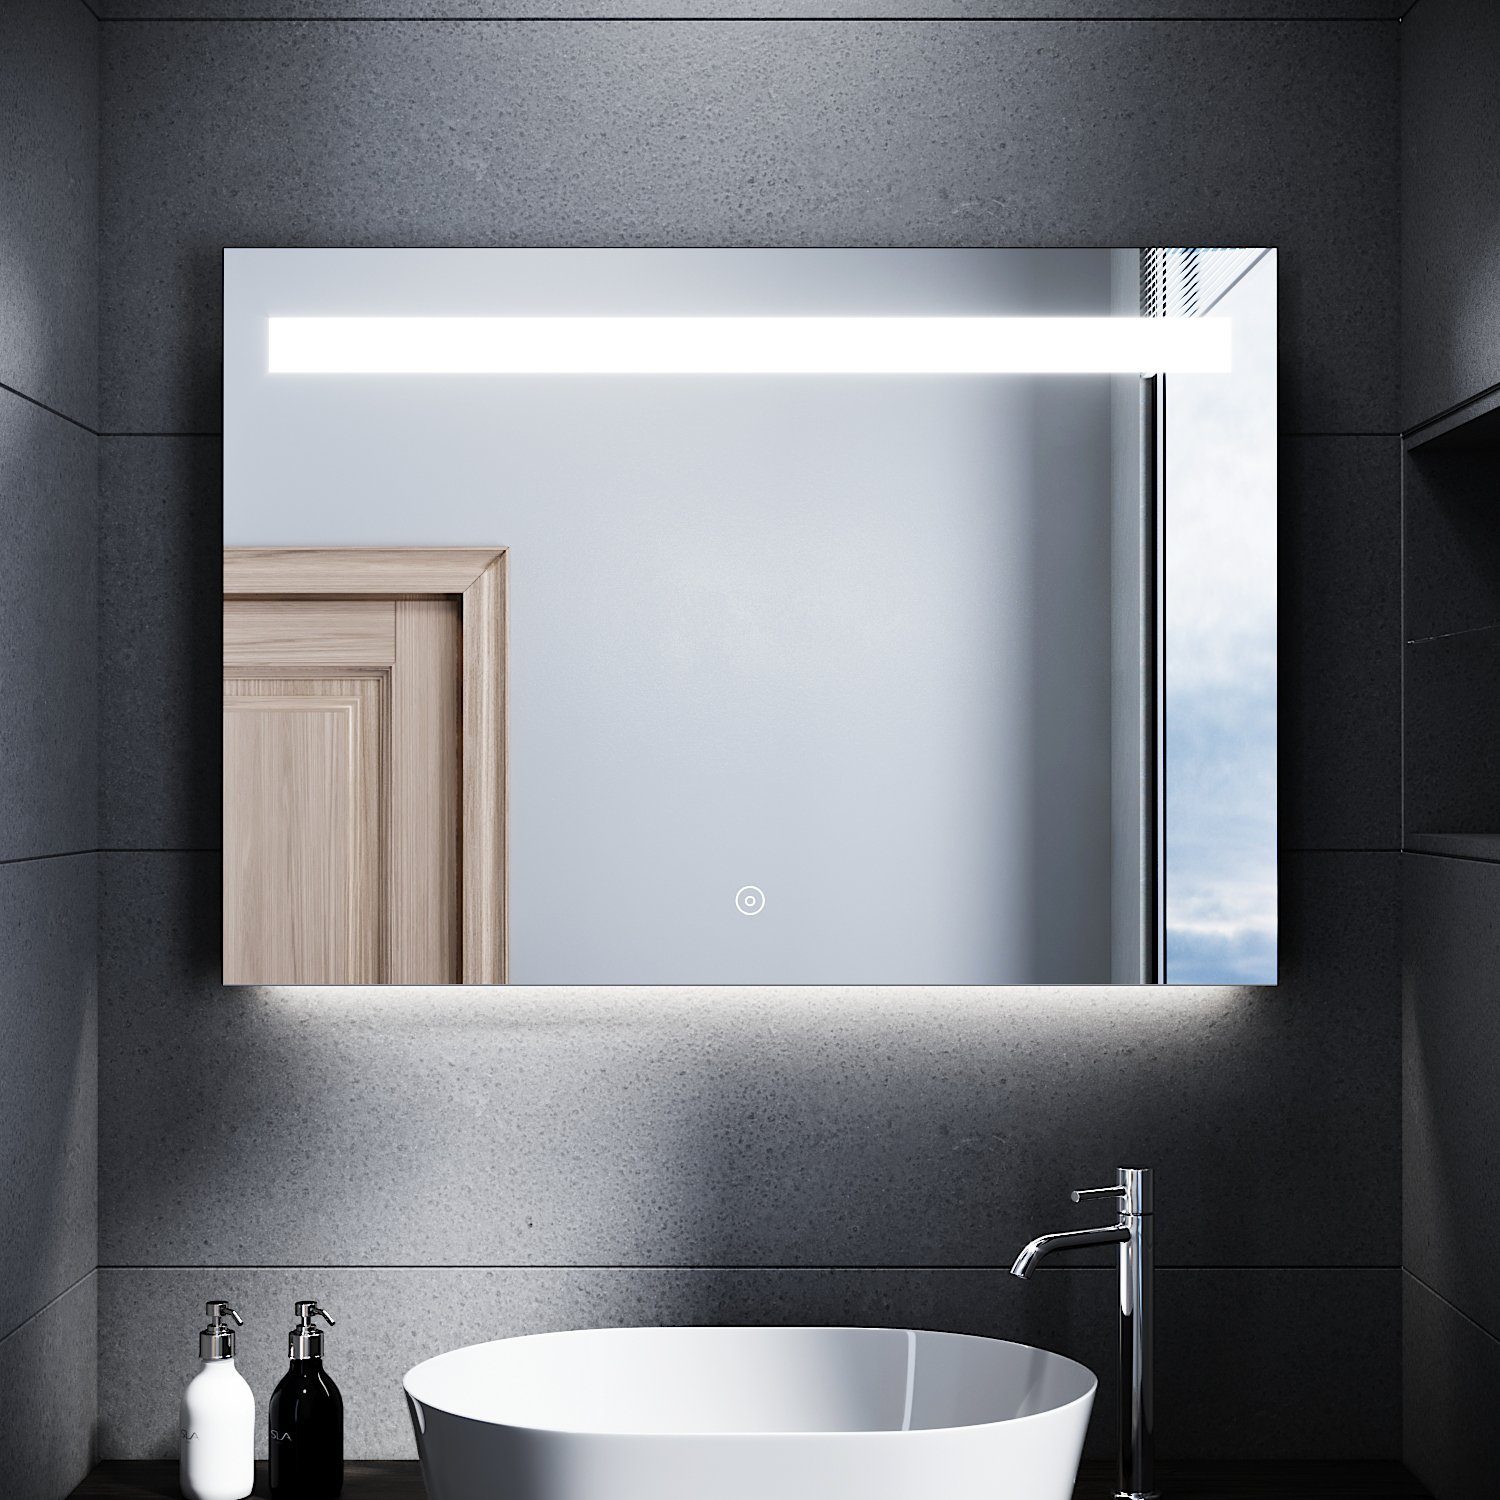 SONNI Badspiegel »Badspiegel mit Beleuchtung beschlagfrei 100 x 70 cm LED  Badspiegel mit Touch kaltweiß Badezimmerspiegel IP44« online kaufen | OTTO